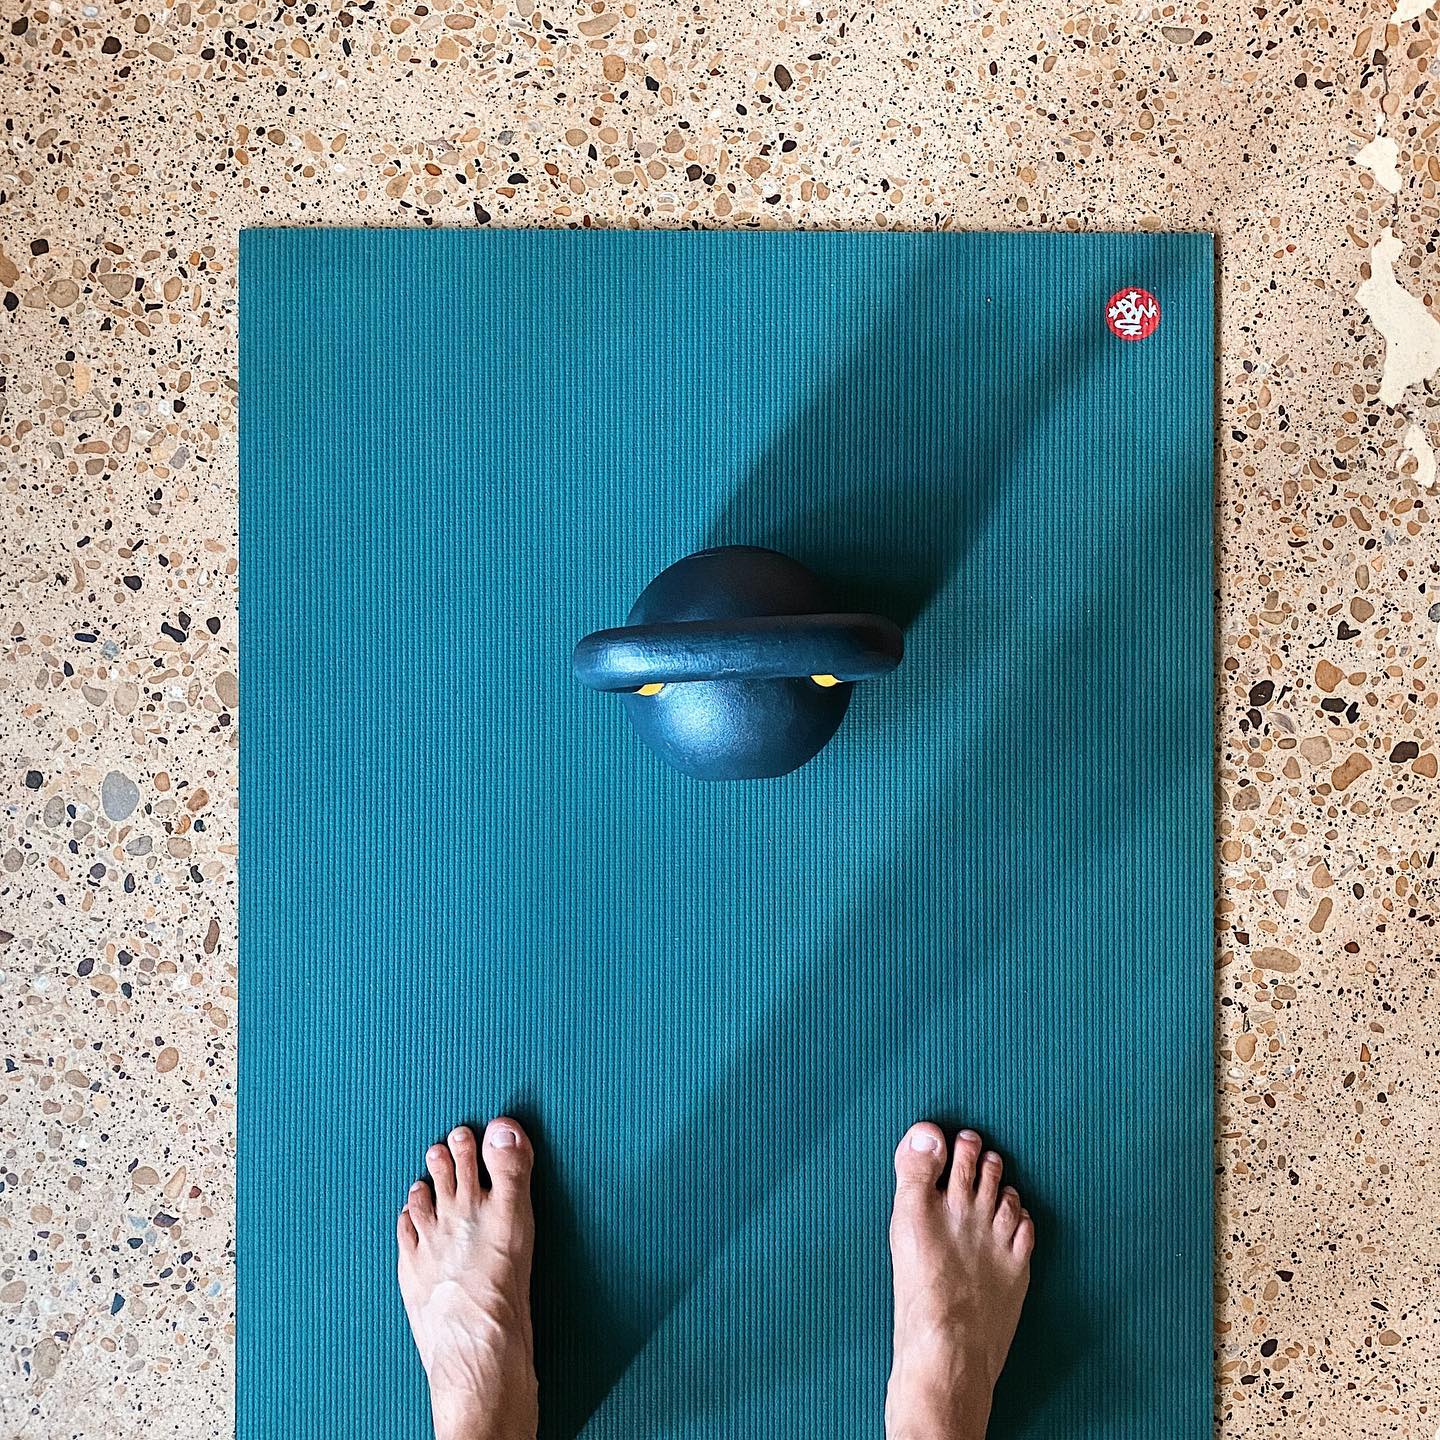 16kg kettlebell on Manduka yoga mat, feet standing on mat